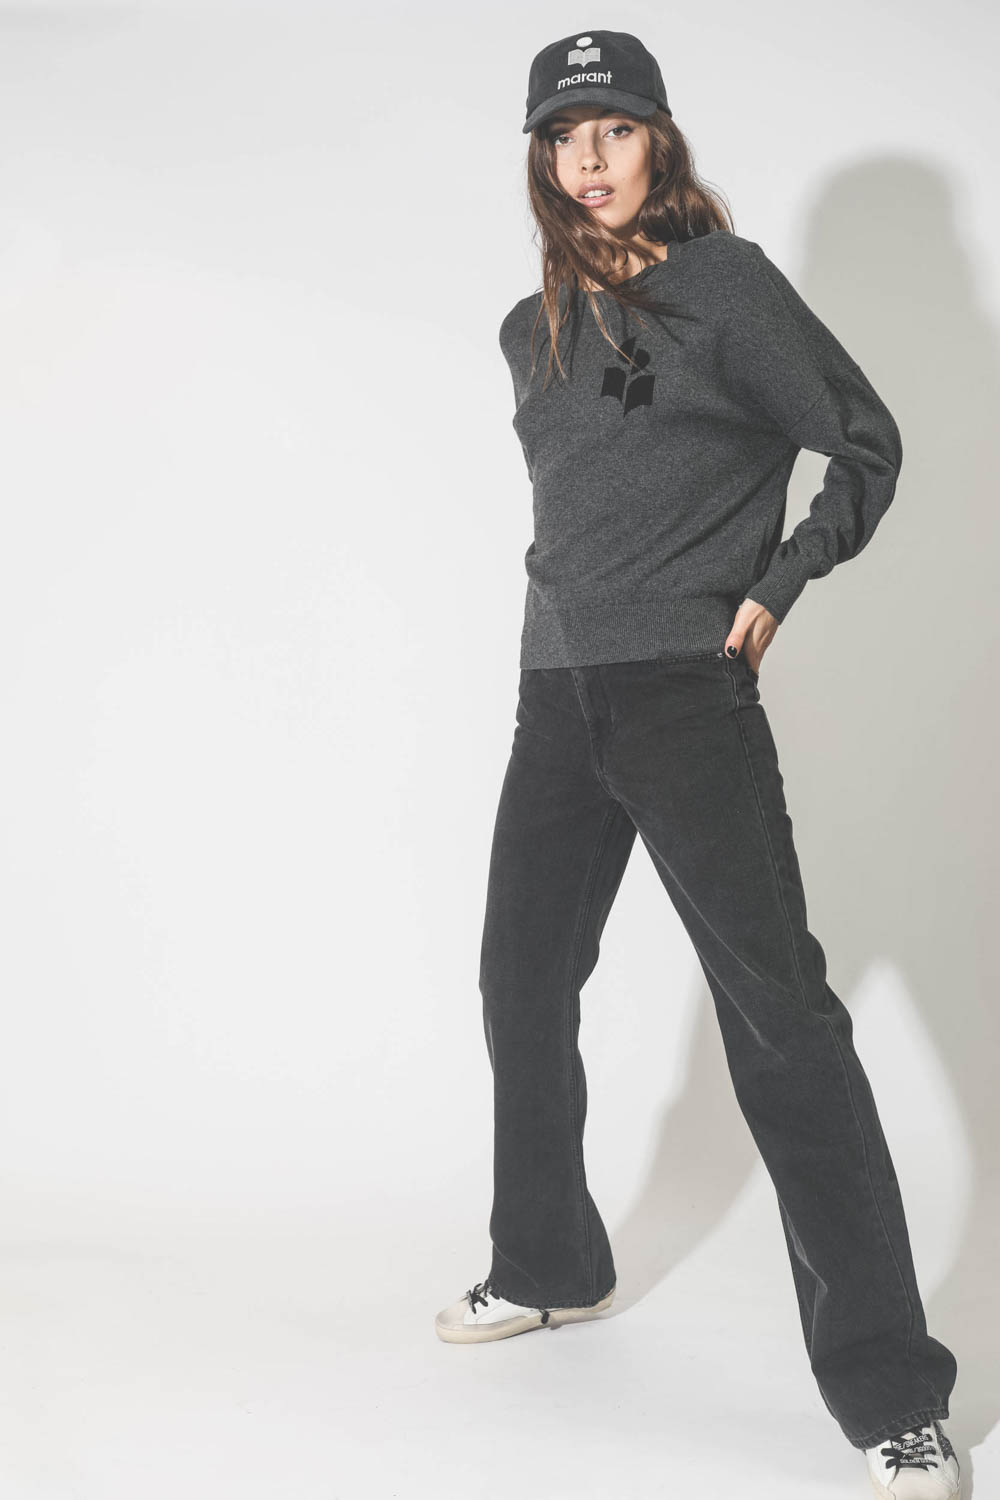 Jeans droit taille haute denim noir 100% coton non extensible Belvira Isabel Marant Etoile. Porté avec un pull gris à logo.